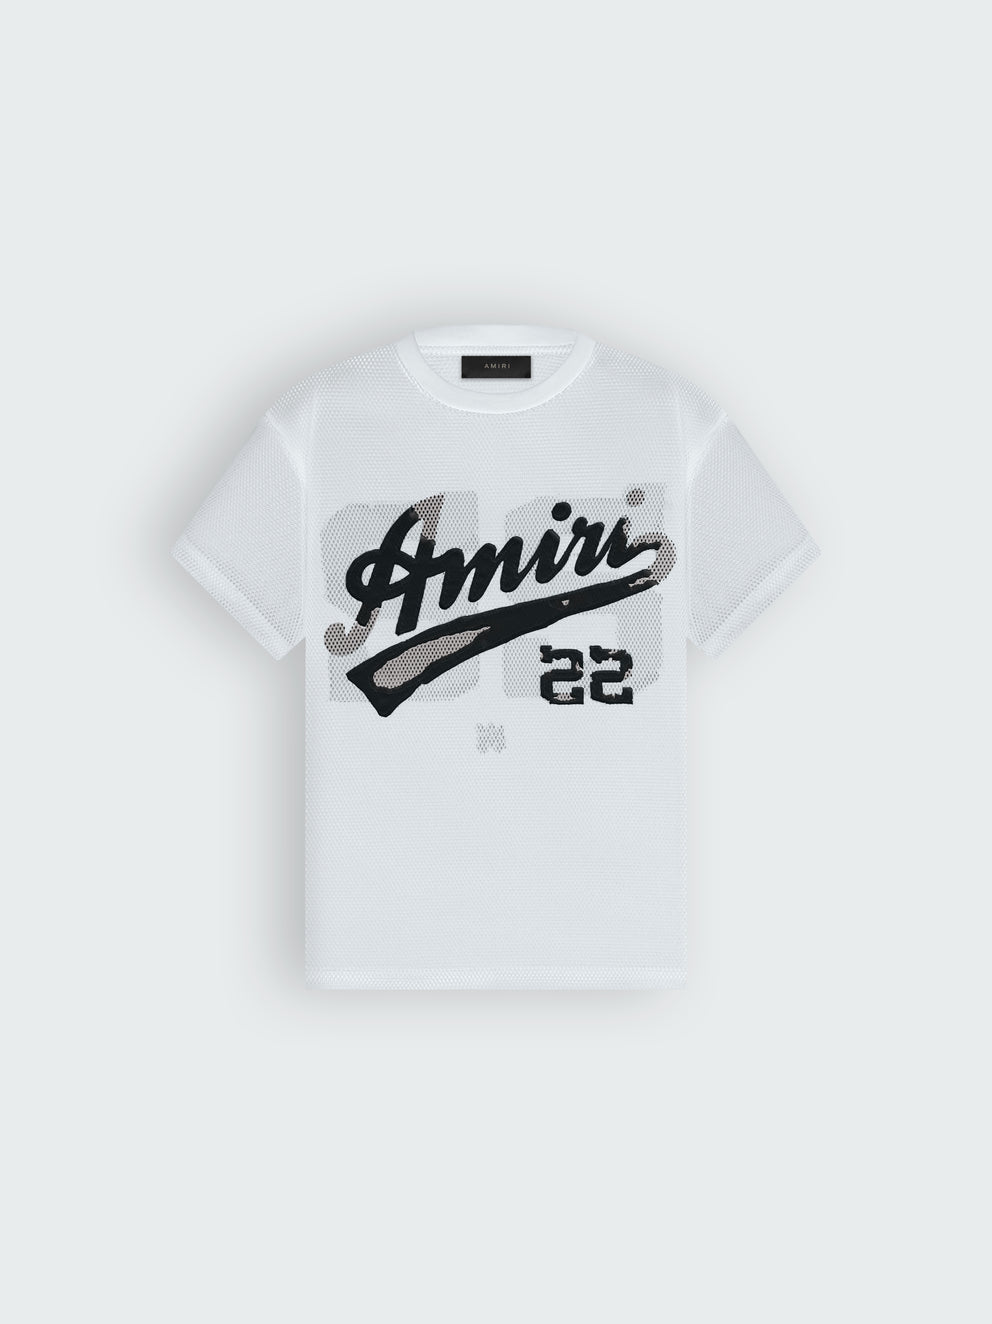 Camisas Amiri 22 Mesh Hombre Blancas Negras | 7360EVTMX